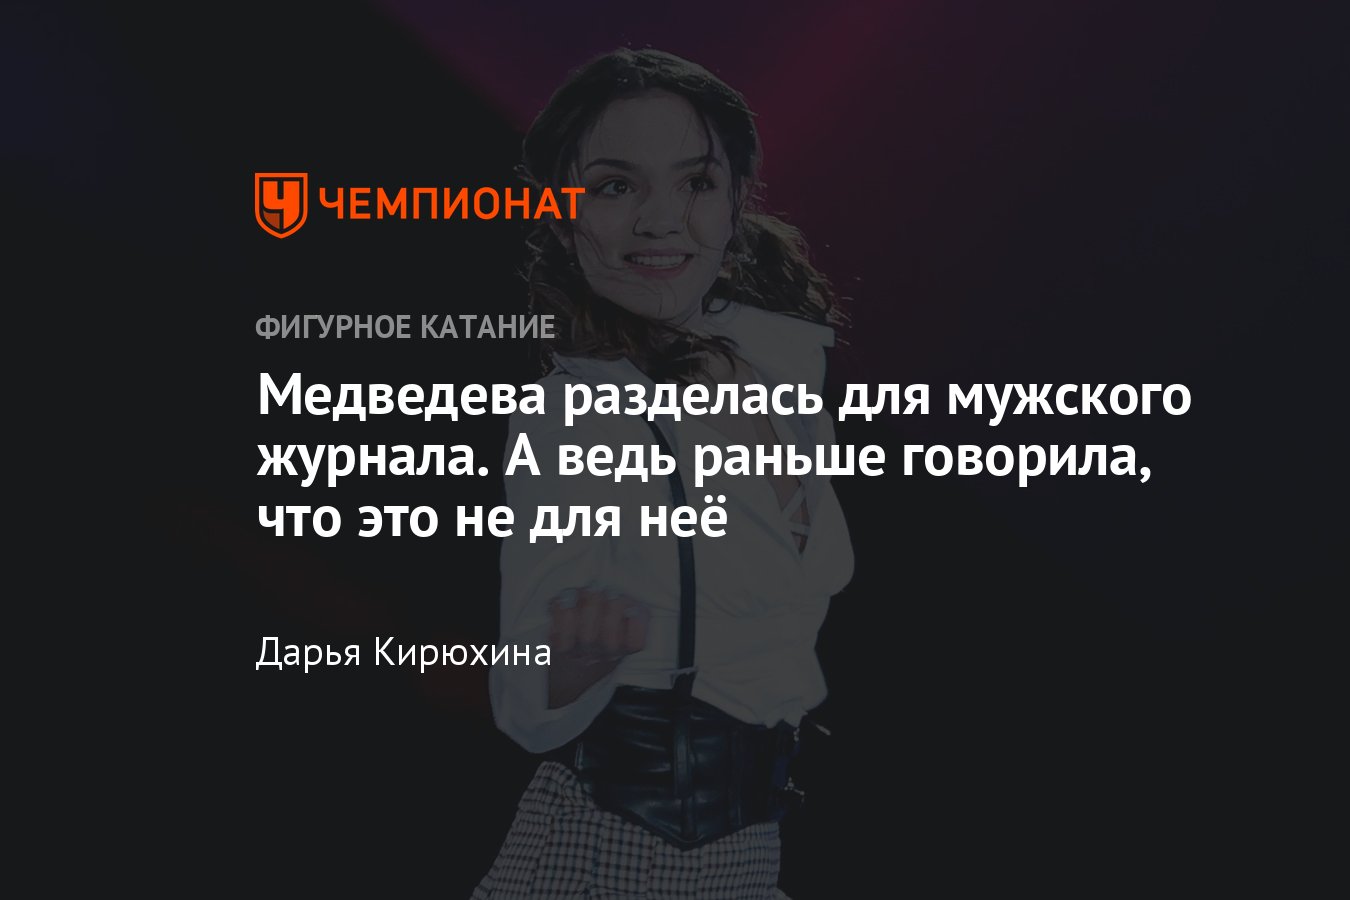 Евгения Медведева разделась для мужского журнала — а ведь раньше фигуристка  говорила, что это не для неё - Чемпионат